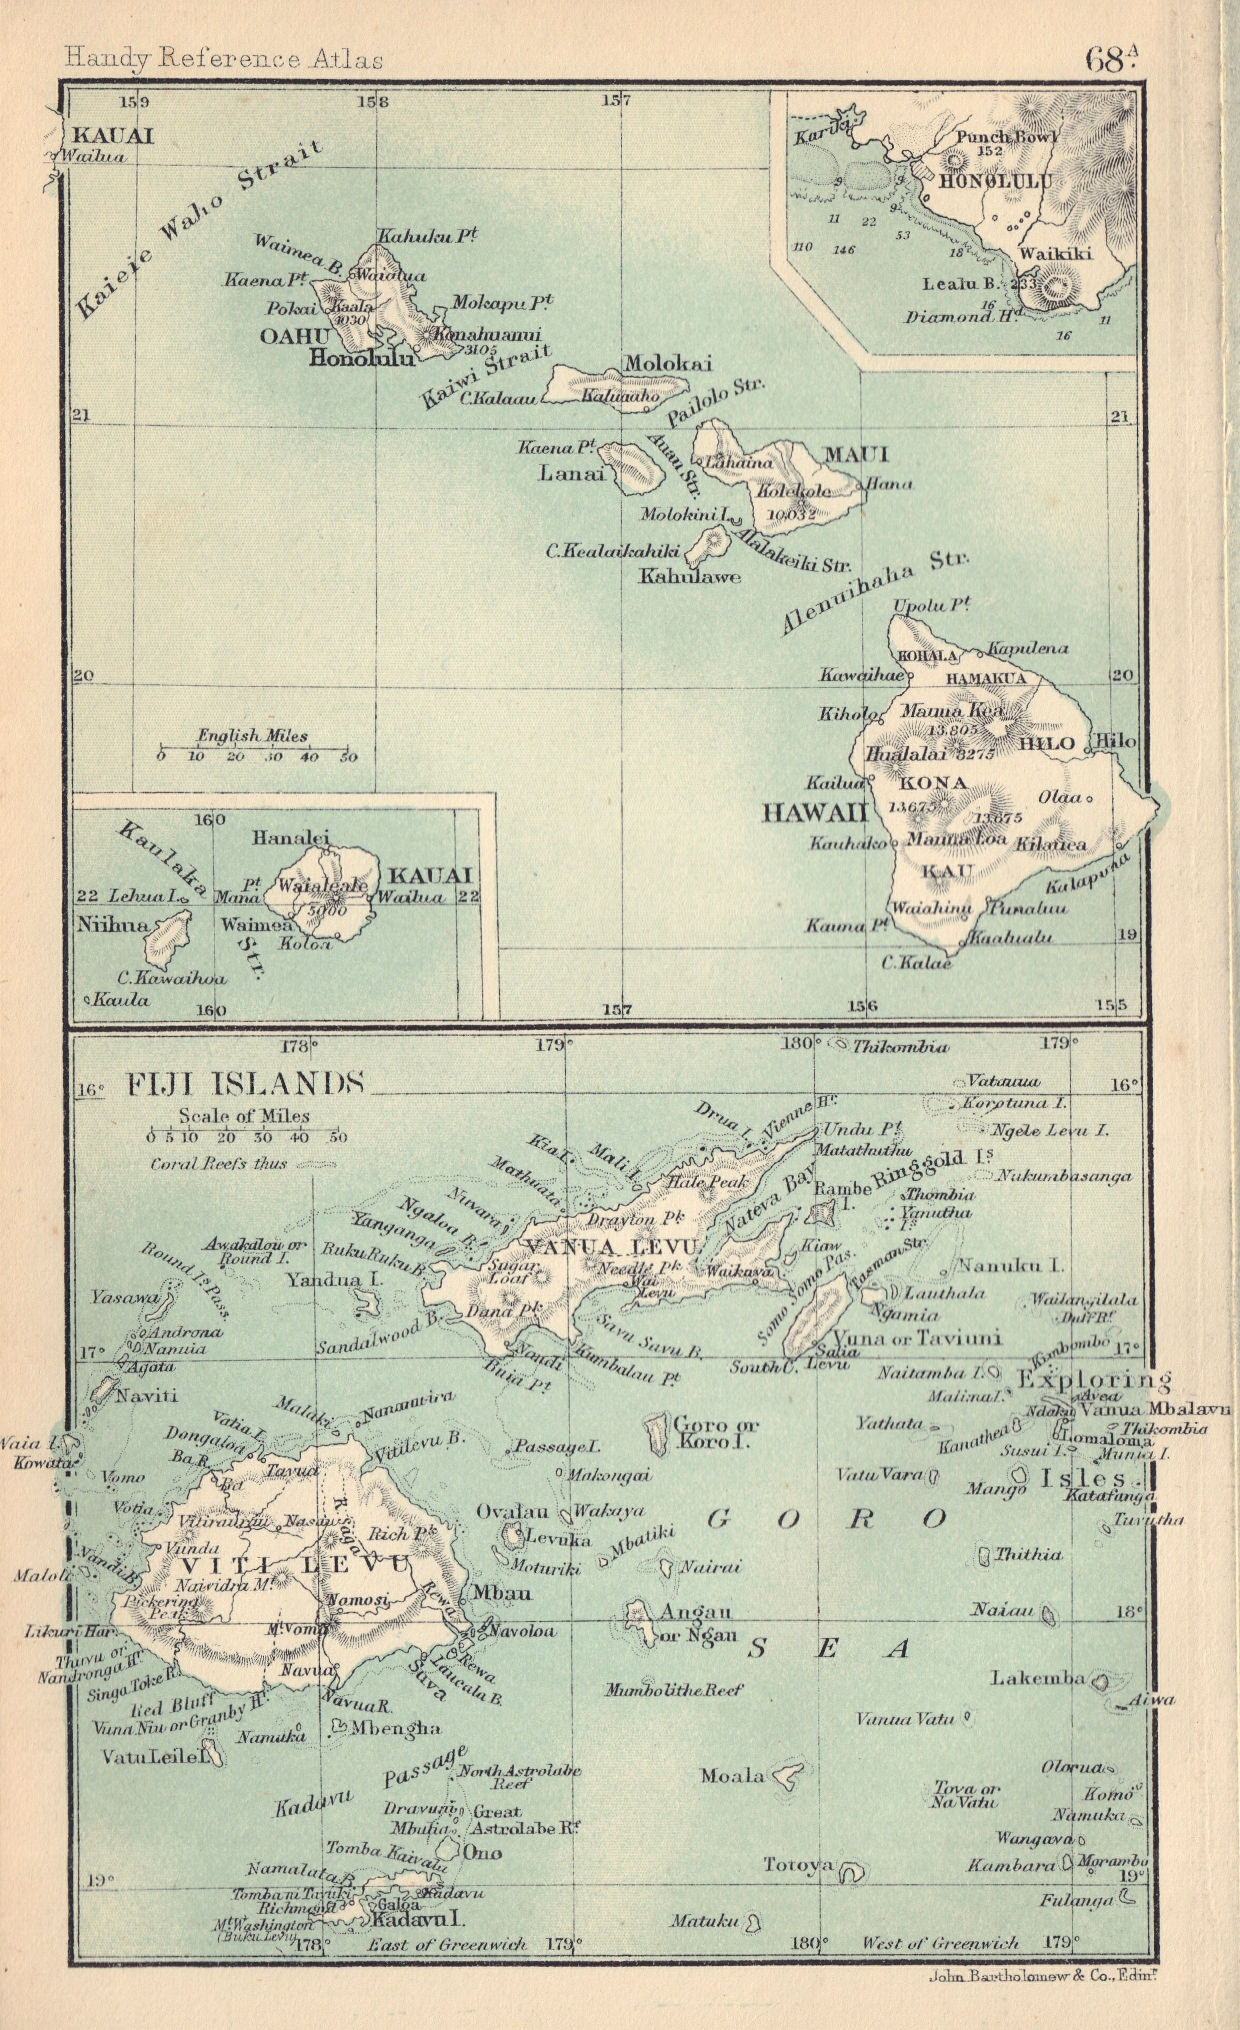 Hawaii & the Fiji Islands. Kauai. Honolulu. BARTHOLOMEW 1898 old antique map